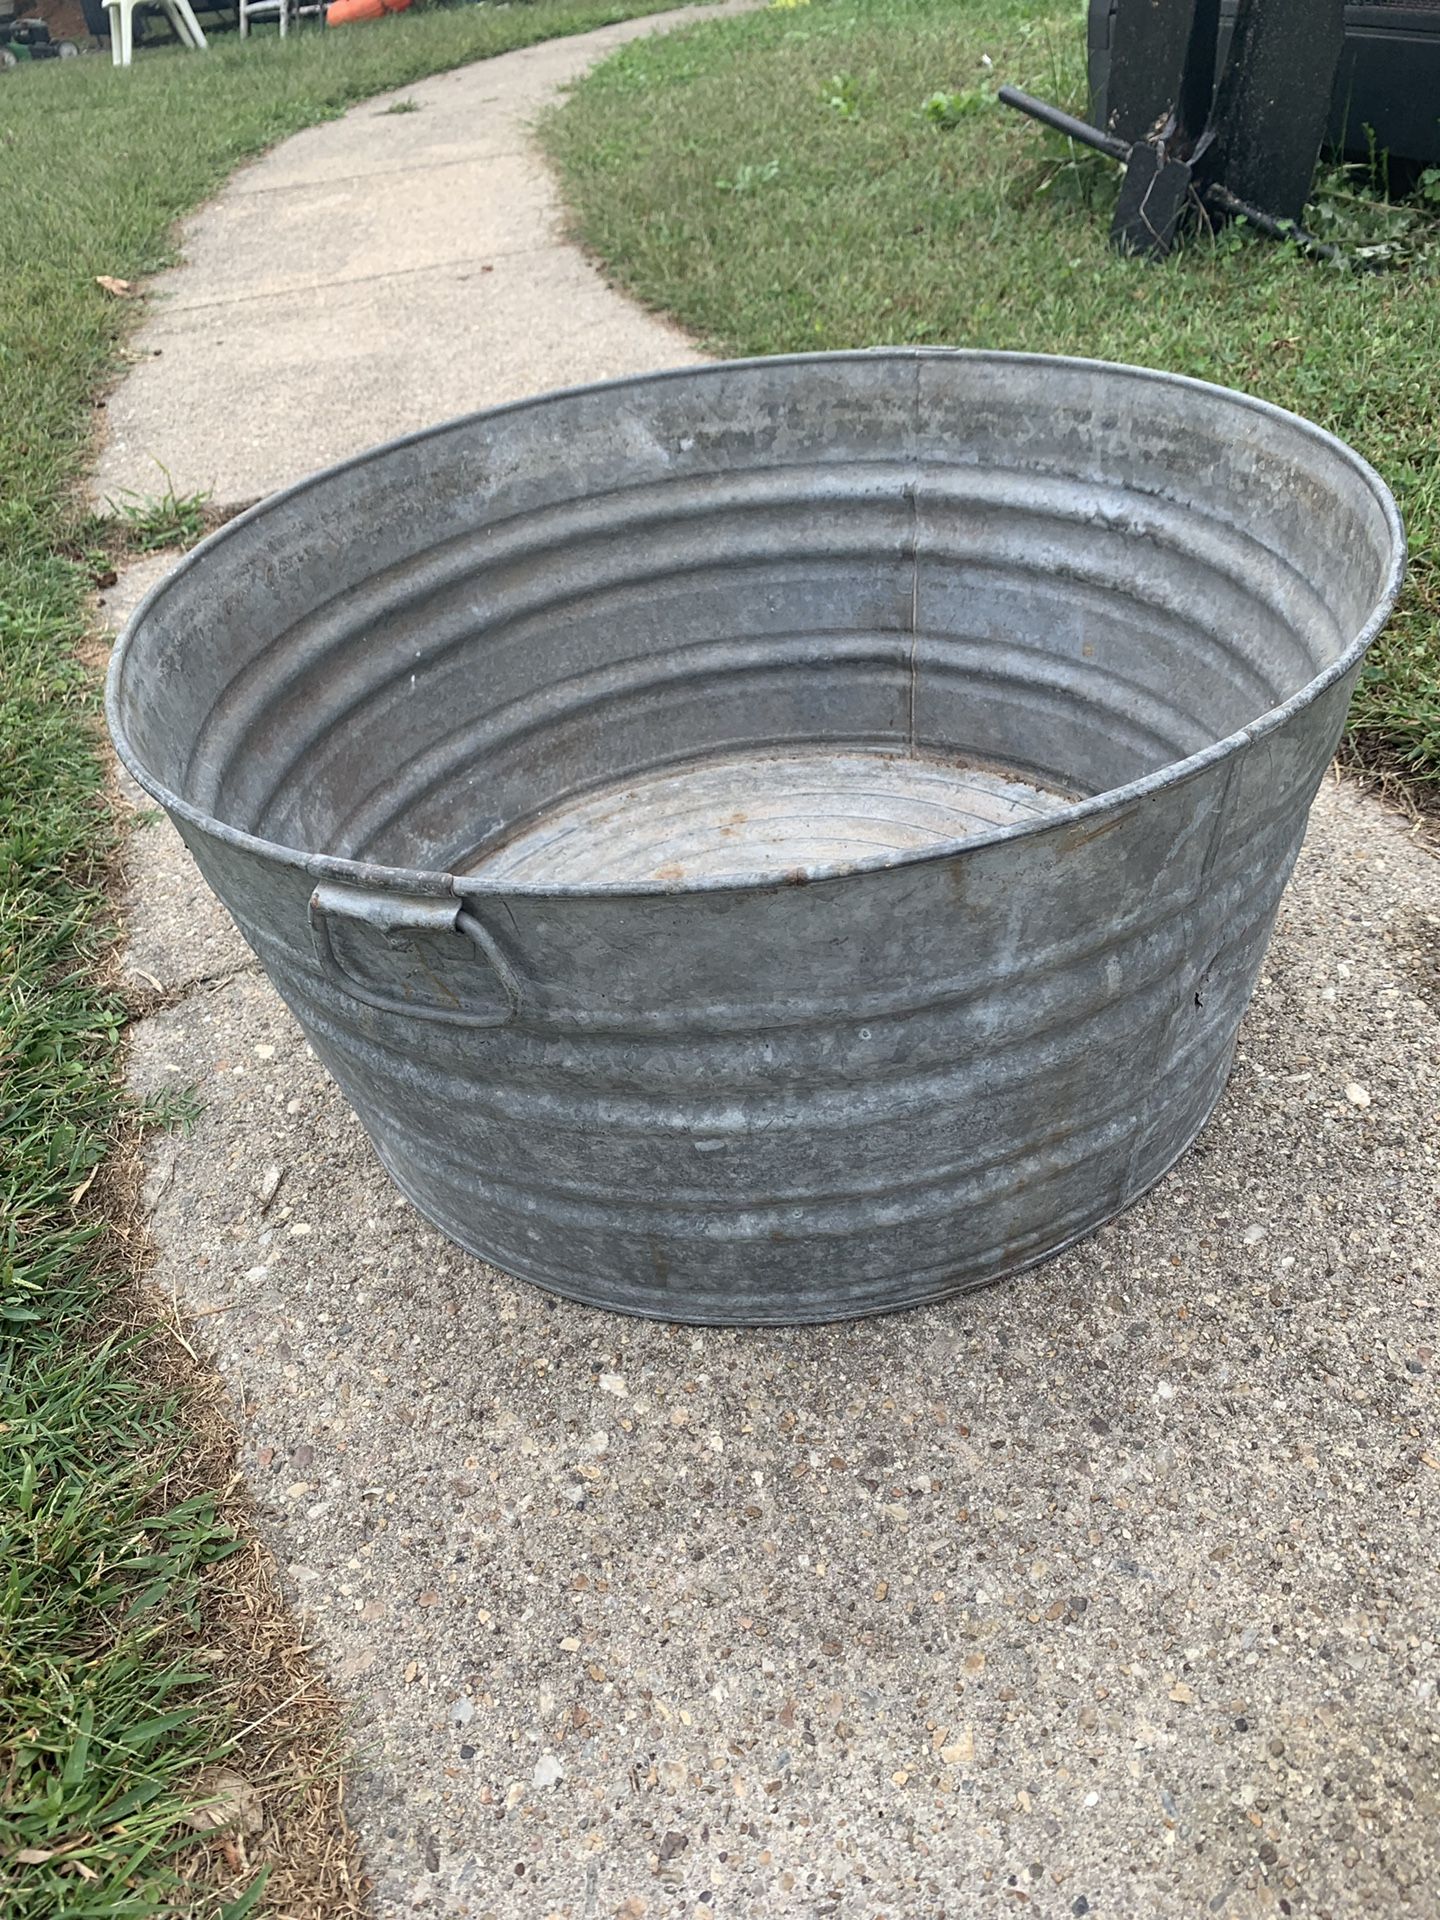 22”galvanized tub